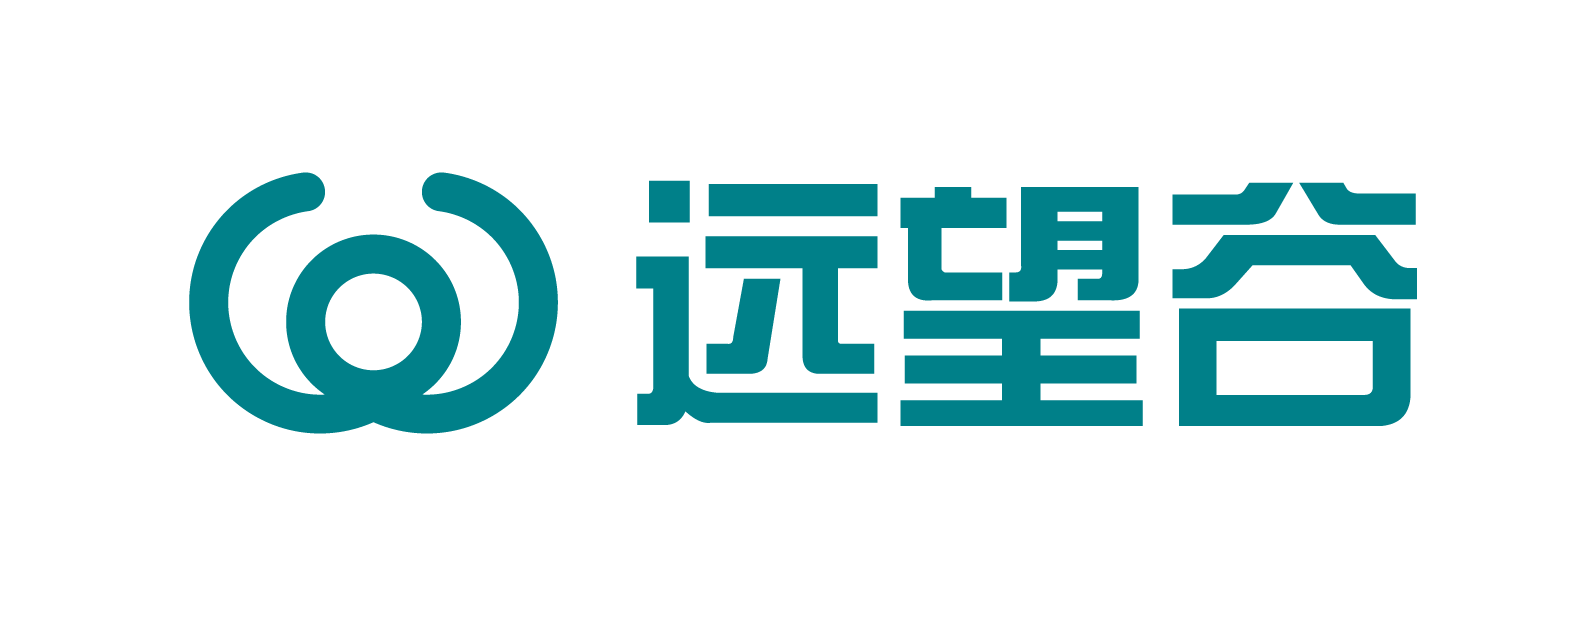 深圳市远望谷信息技术股份有限公司